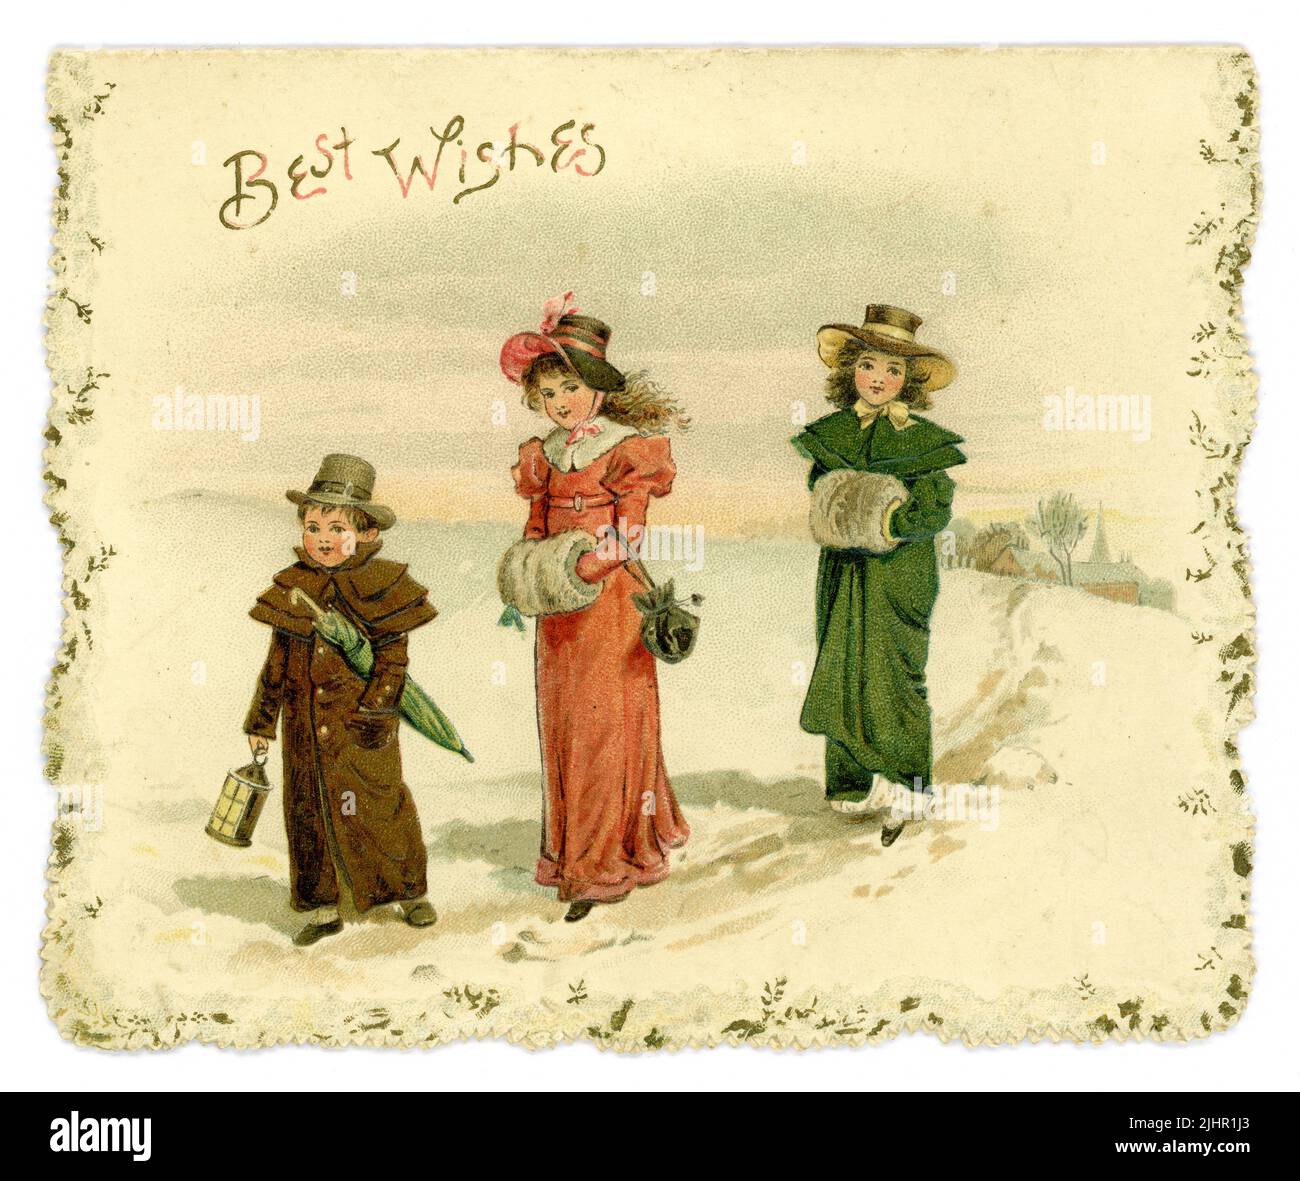 Carte de voeux de Noël originale de l'époque édouardienne, « Paris voeux » - enfants de style Régence (Regency était 1811-1820) vêtements marchant dans la neige, carte postale en ligne similaire envoyée aux États-Unis. Datée de 1904 Banque D'Images